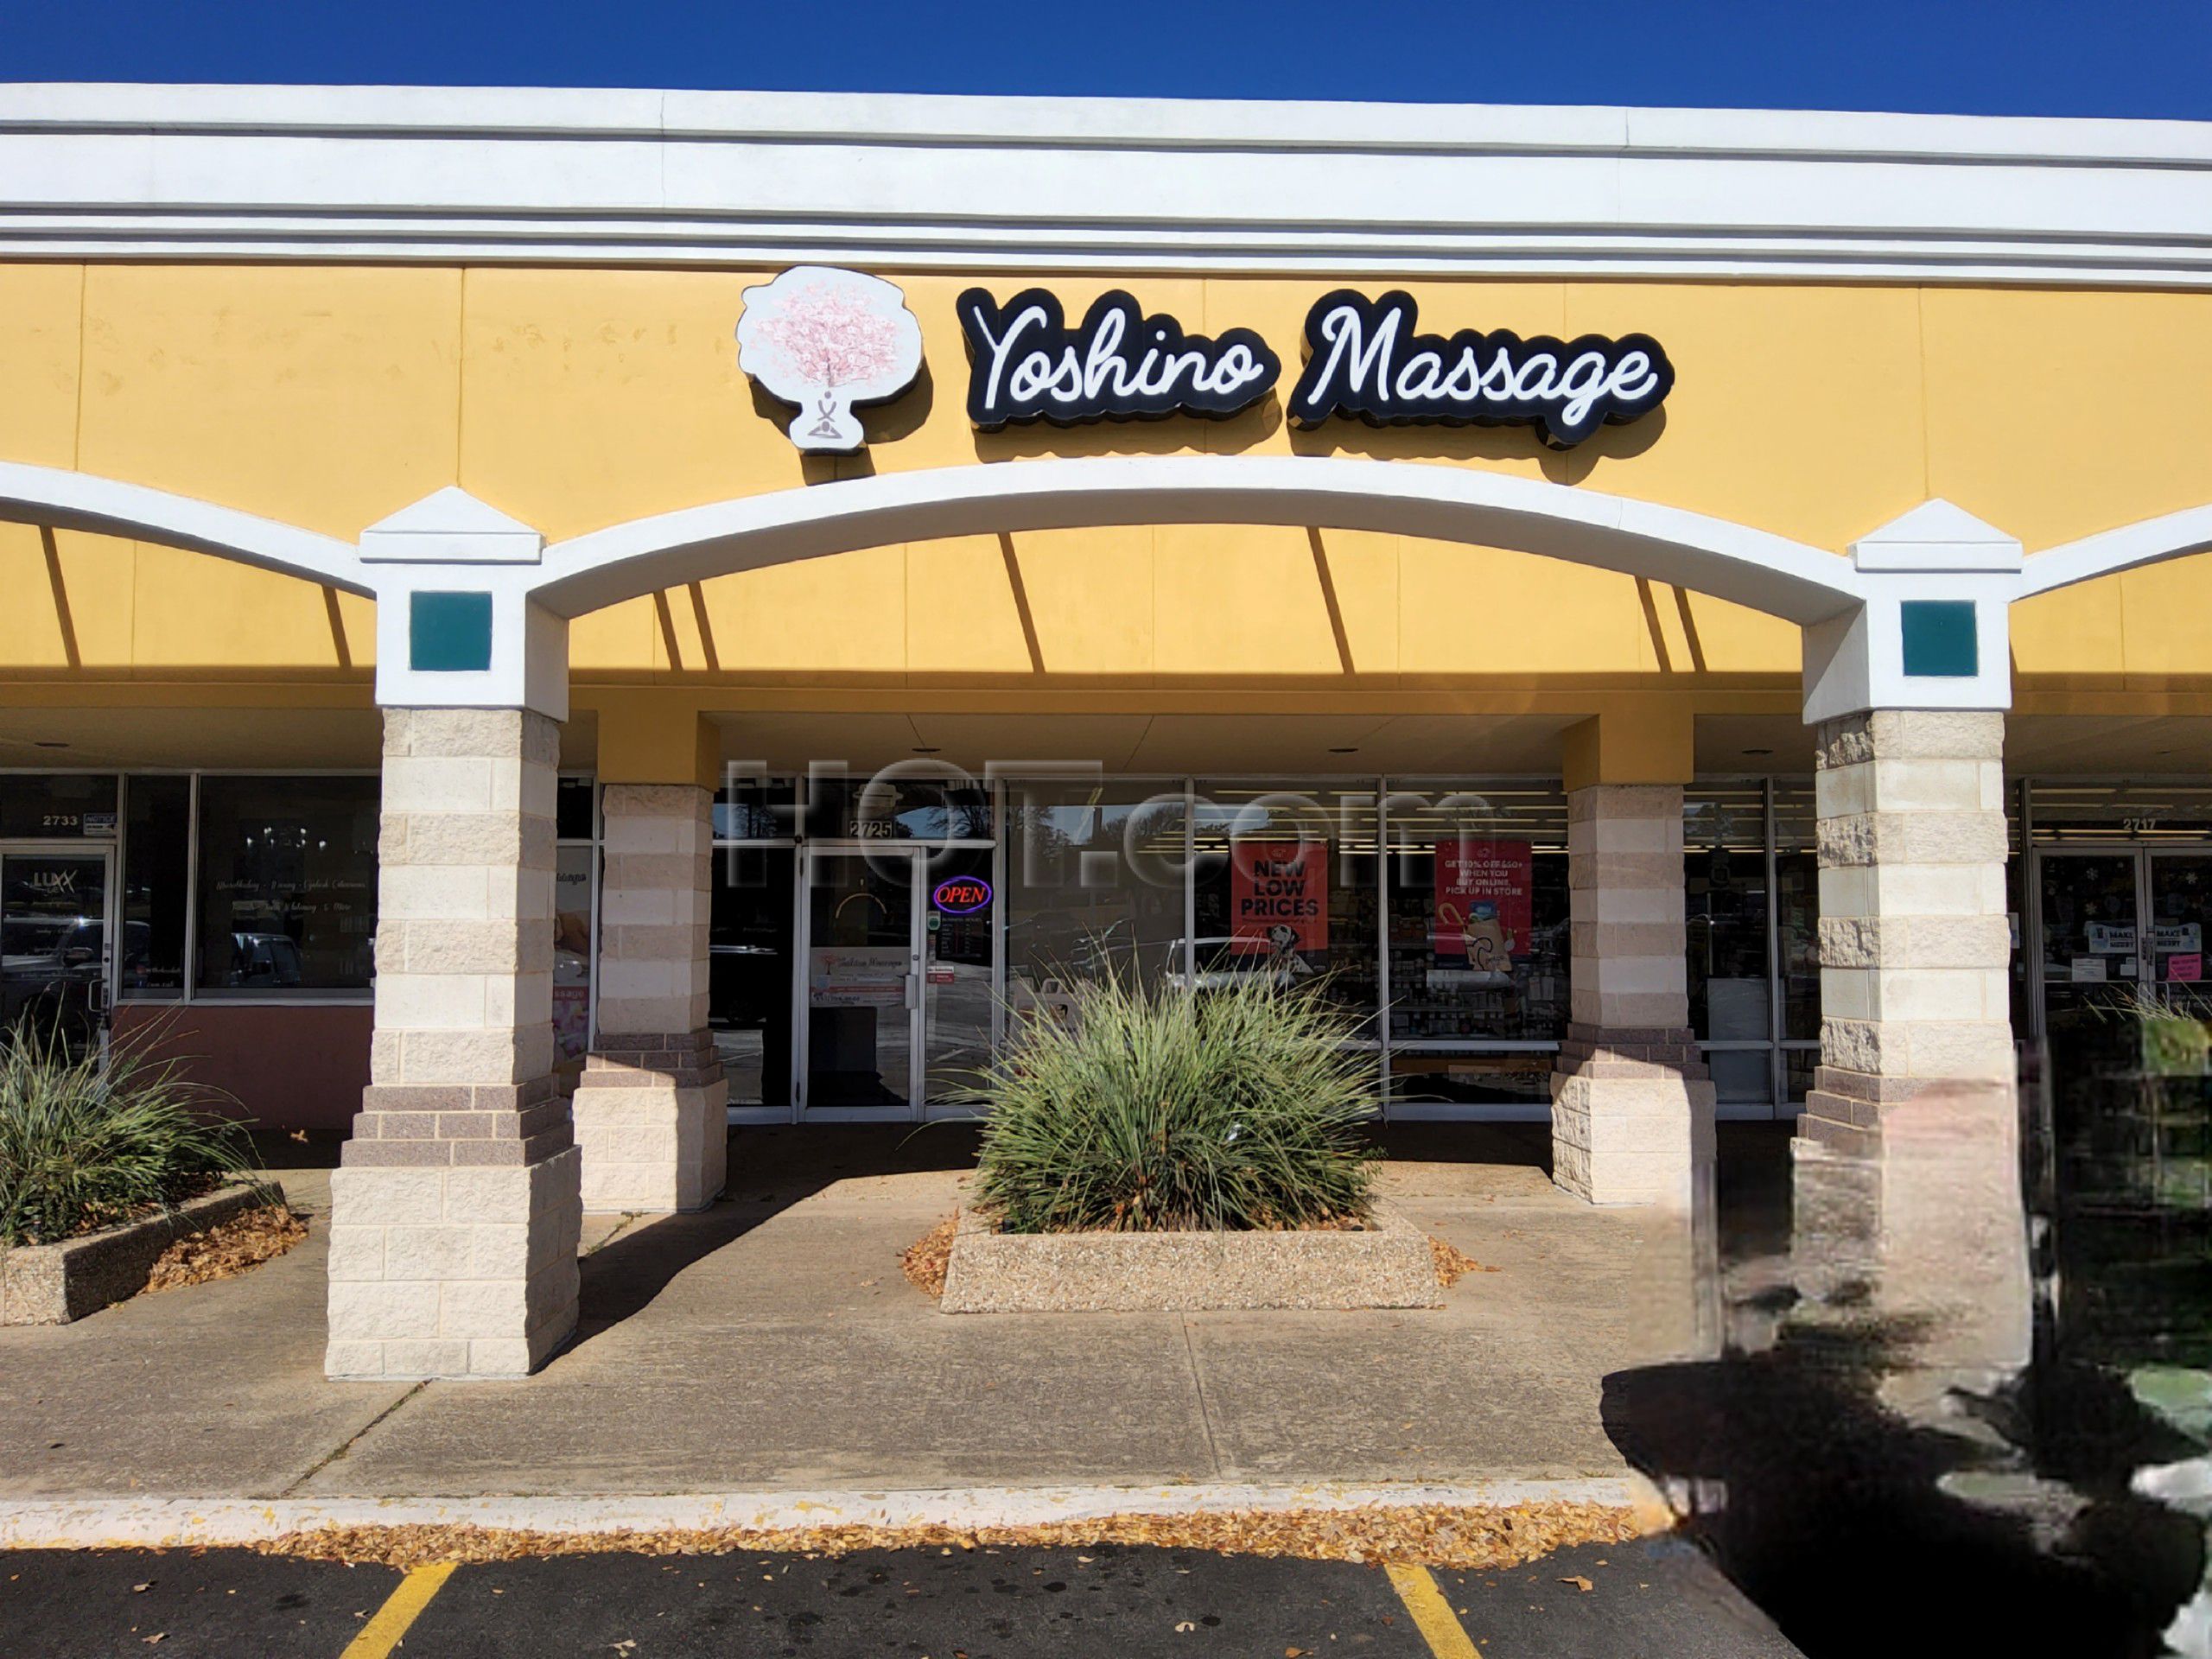 Arlington, Texas Yoshino Massage